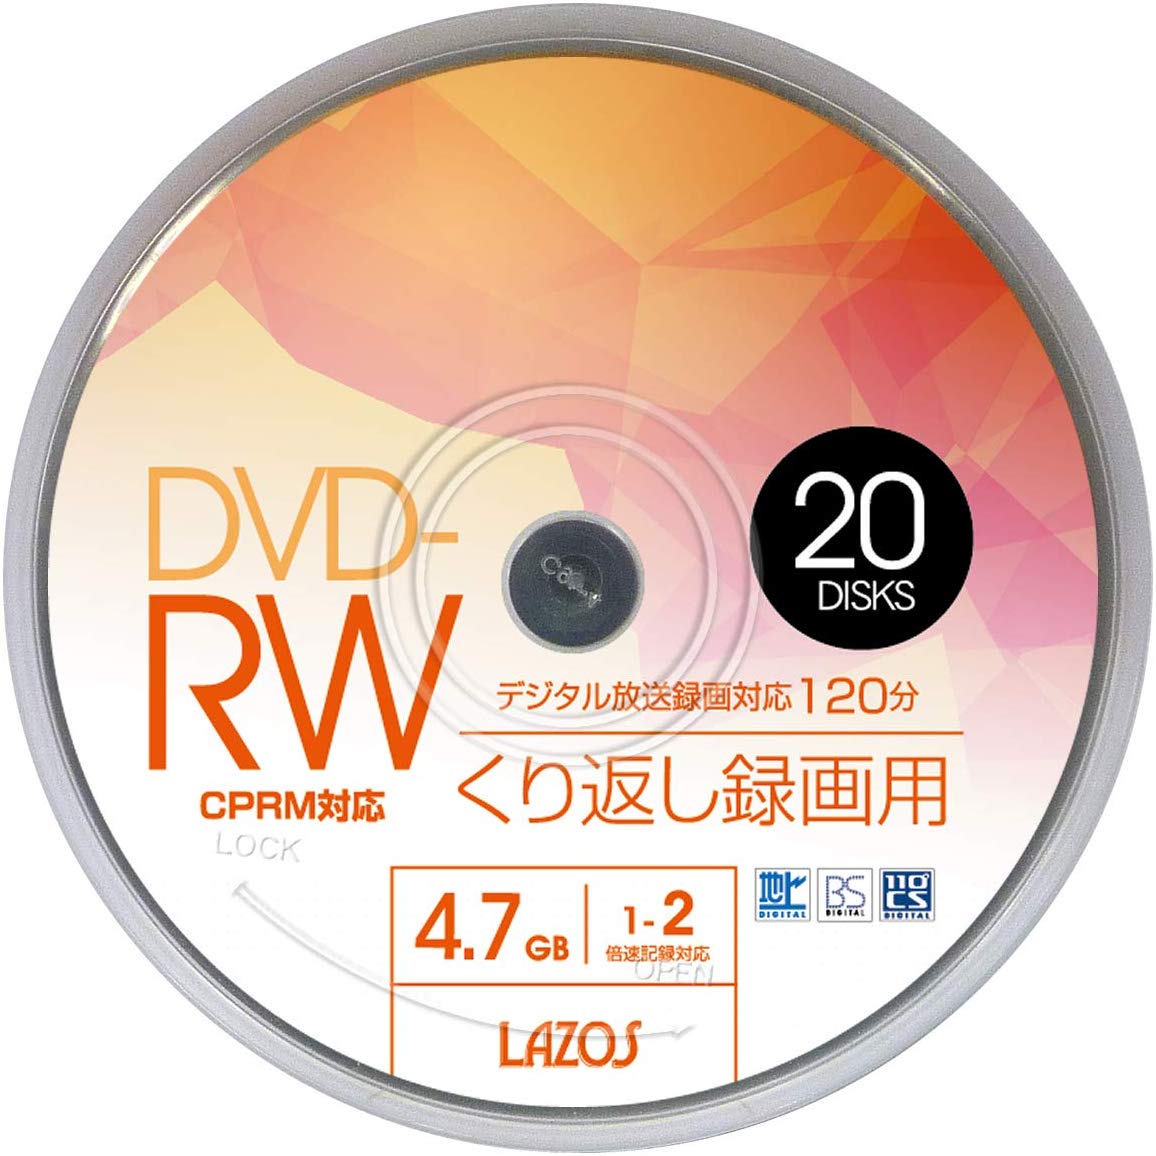 lazos DVD-RWメディア 1～2倍速 20枚入 スピンドルケース ホワイトプリンタブル 4.7GB 120min L-DRW20P スポーツ 記念 撮影 録画 記録 写真 画像